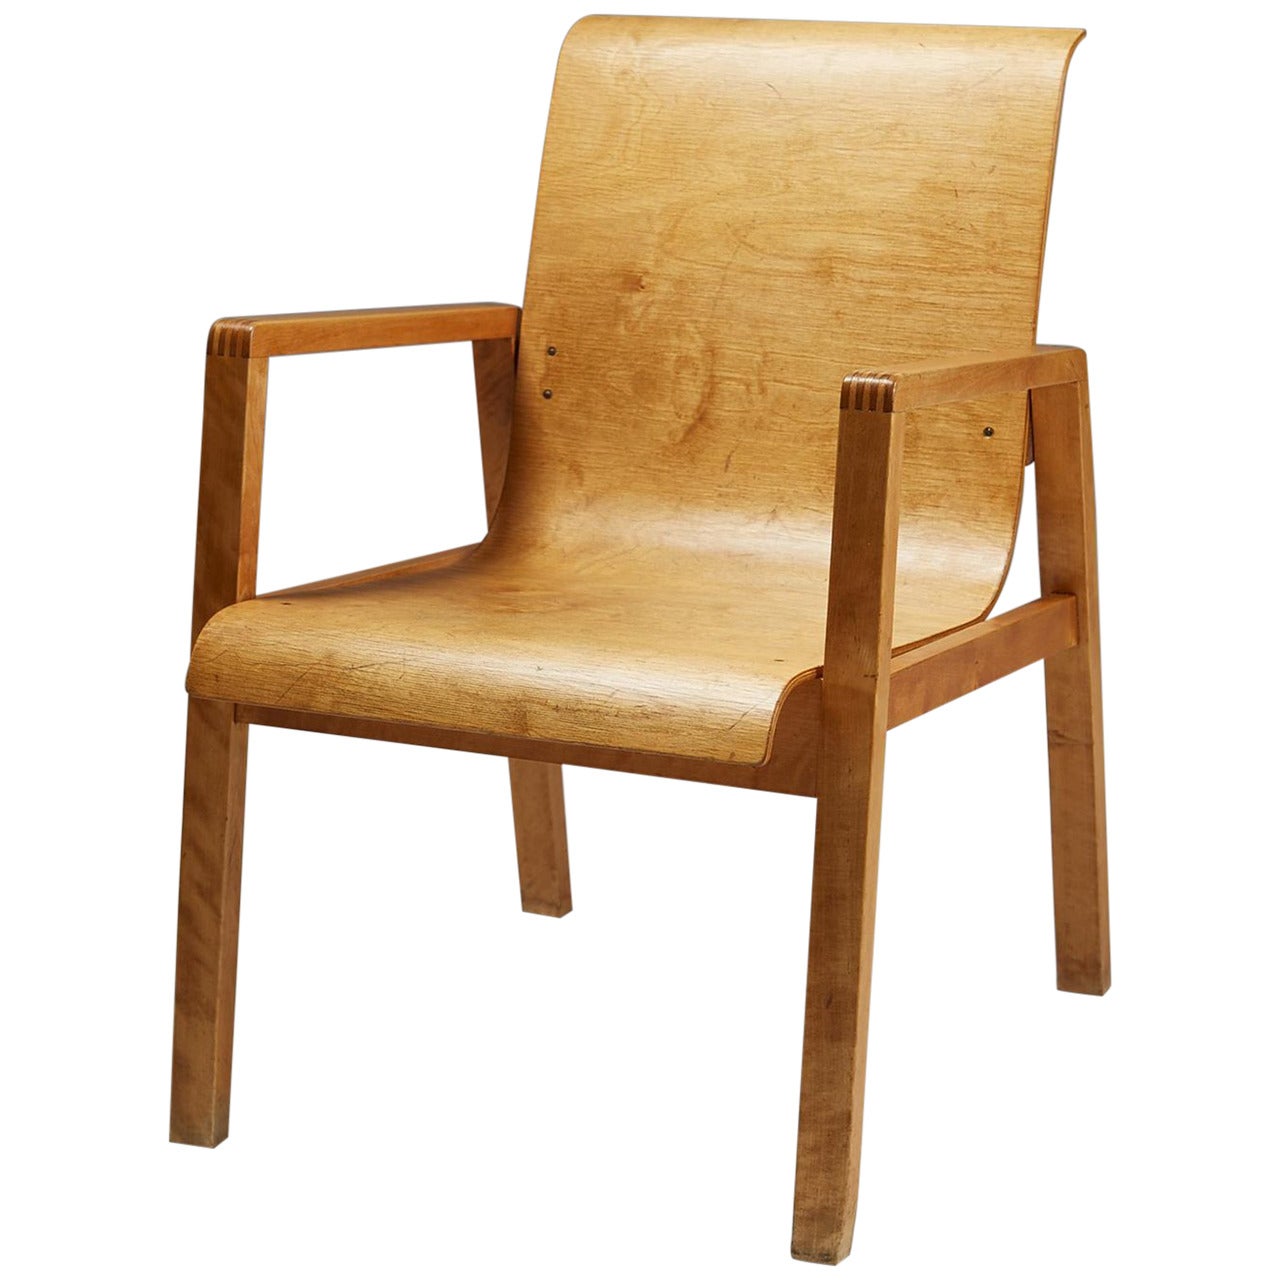 Chair Designed by Alvar Aalto for Artek, Finland, 1950s